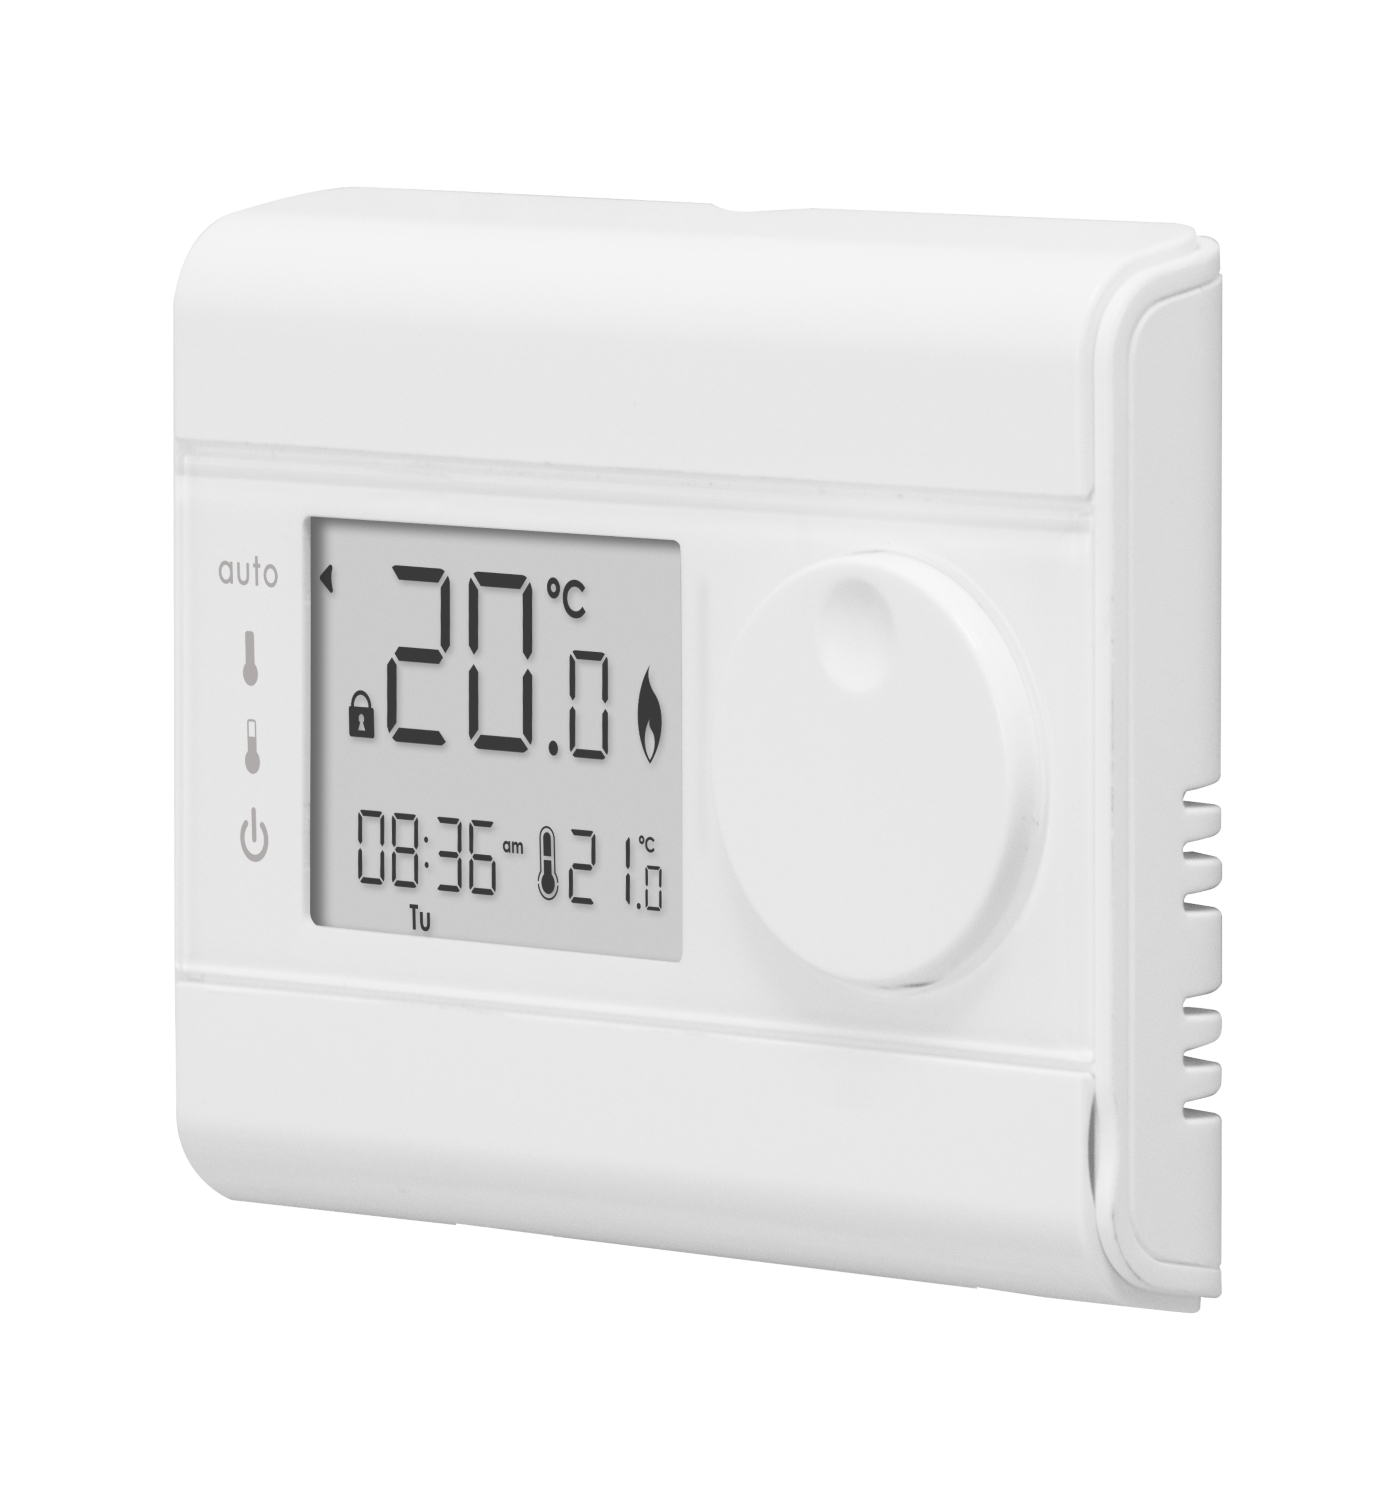 Le thermostat d'ambiance est-il obligatoire ? - Expert Energie Service